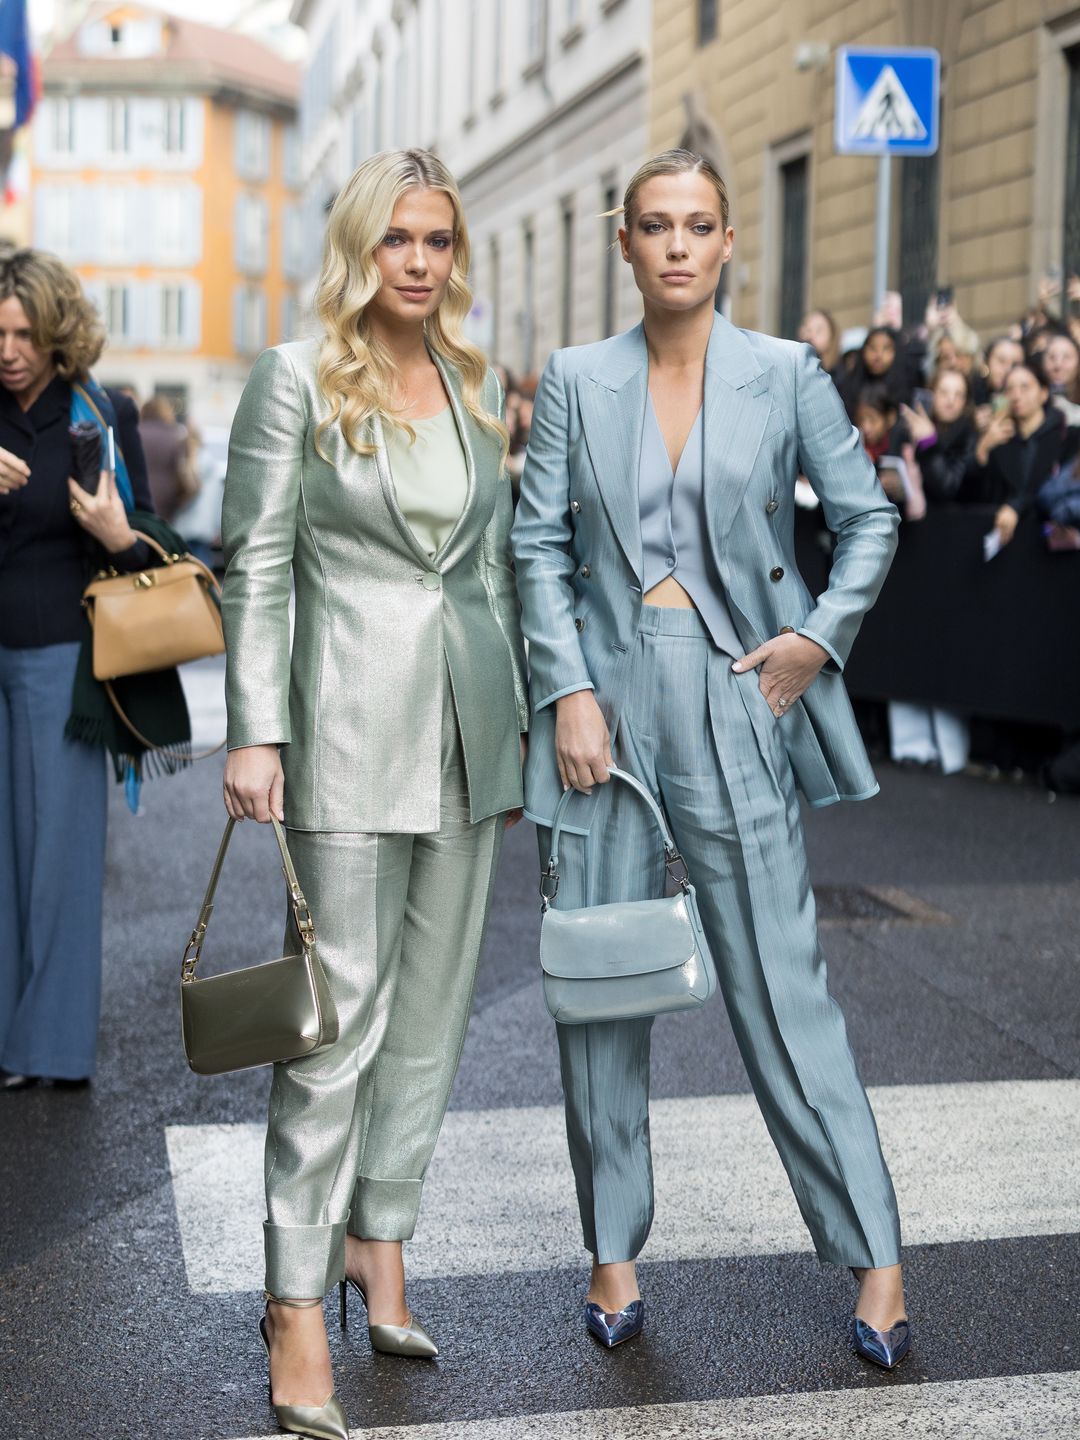 sisters posing in metallic suits on zebra crossing